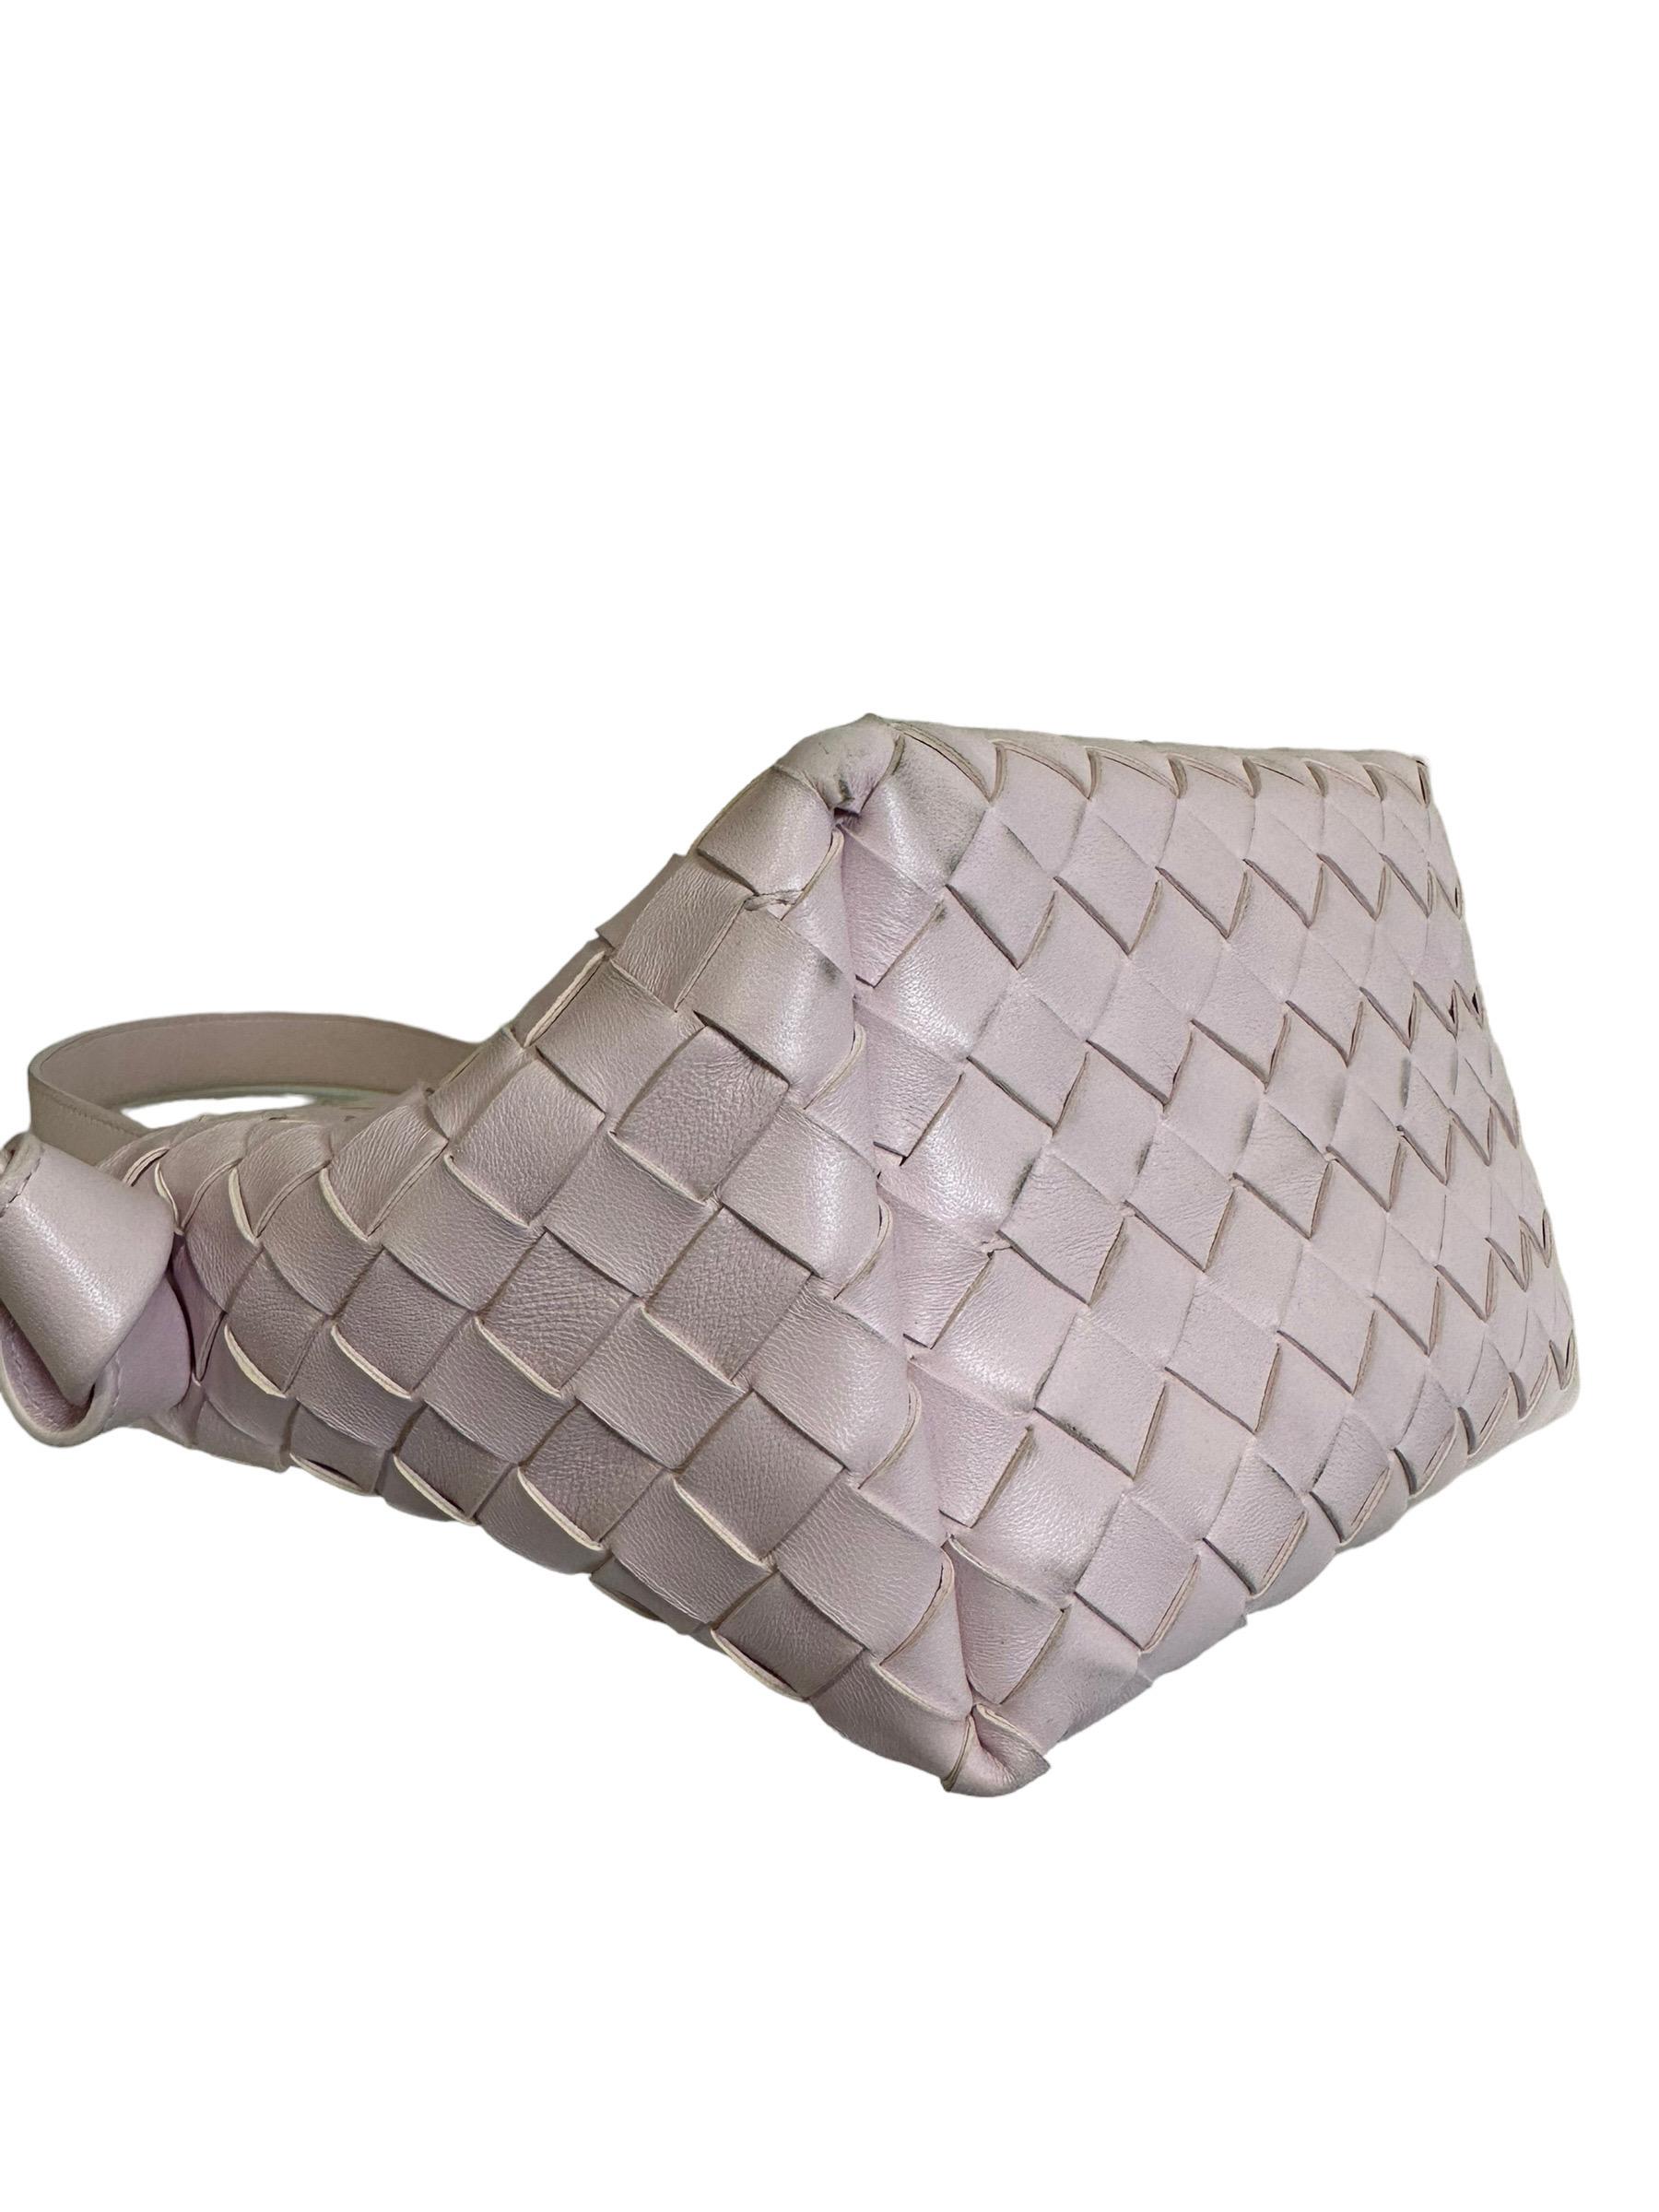 Bottega Veneta Tie Pink Leather Shoulder Bag 1